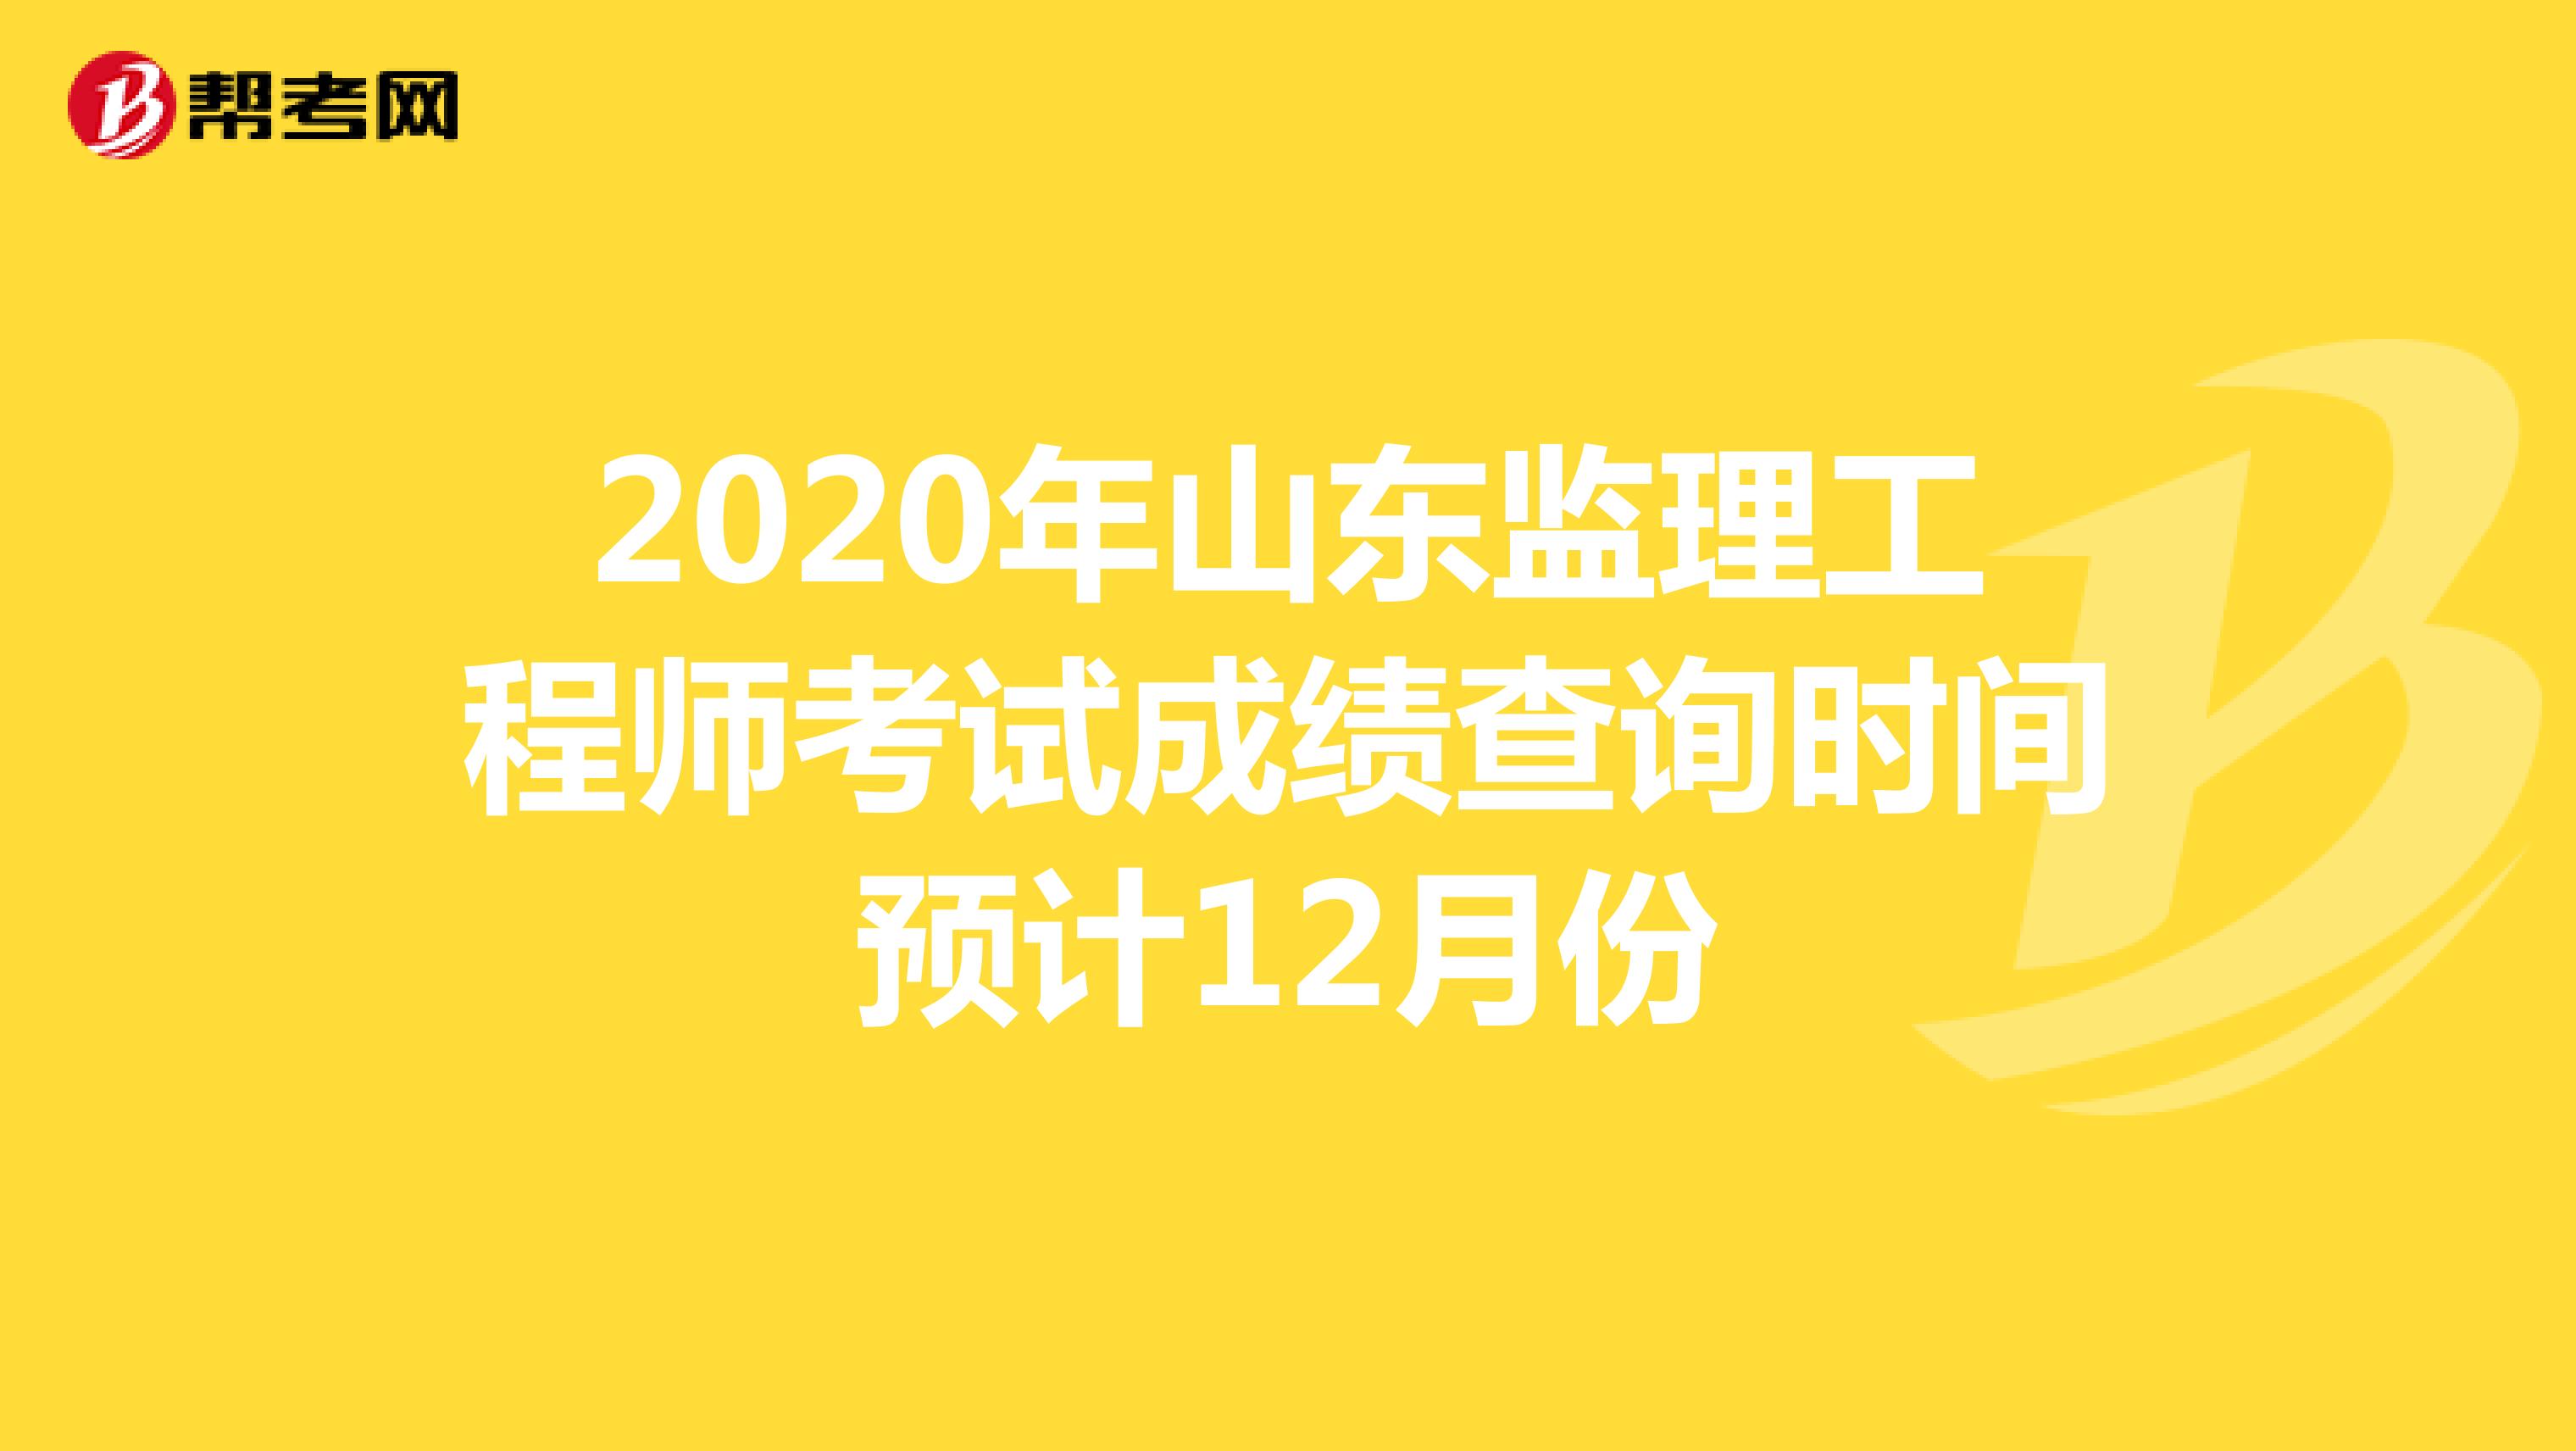 2020年山东监理工程师考试成绩查询时间预计12月份